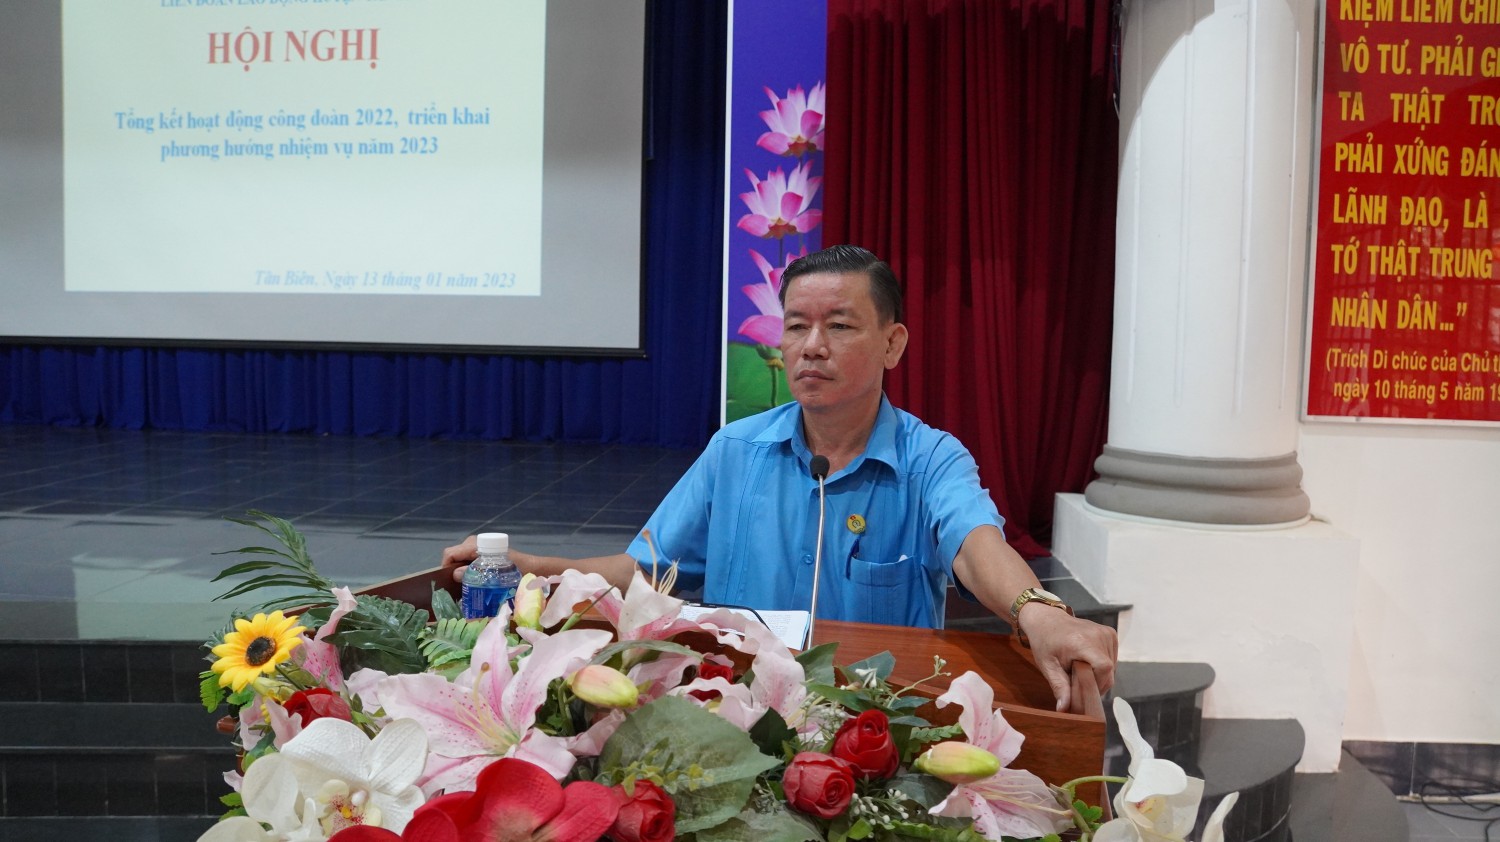 Tân Biên tổng kết hoạt động công đoàn năm 2022.